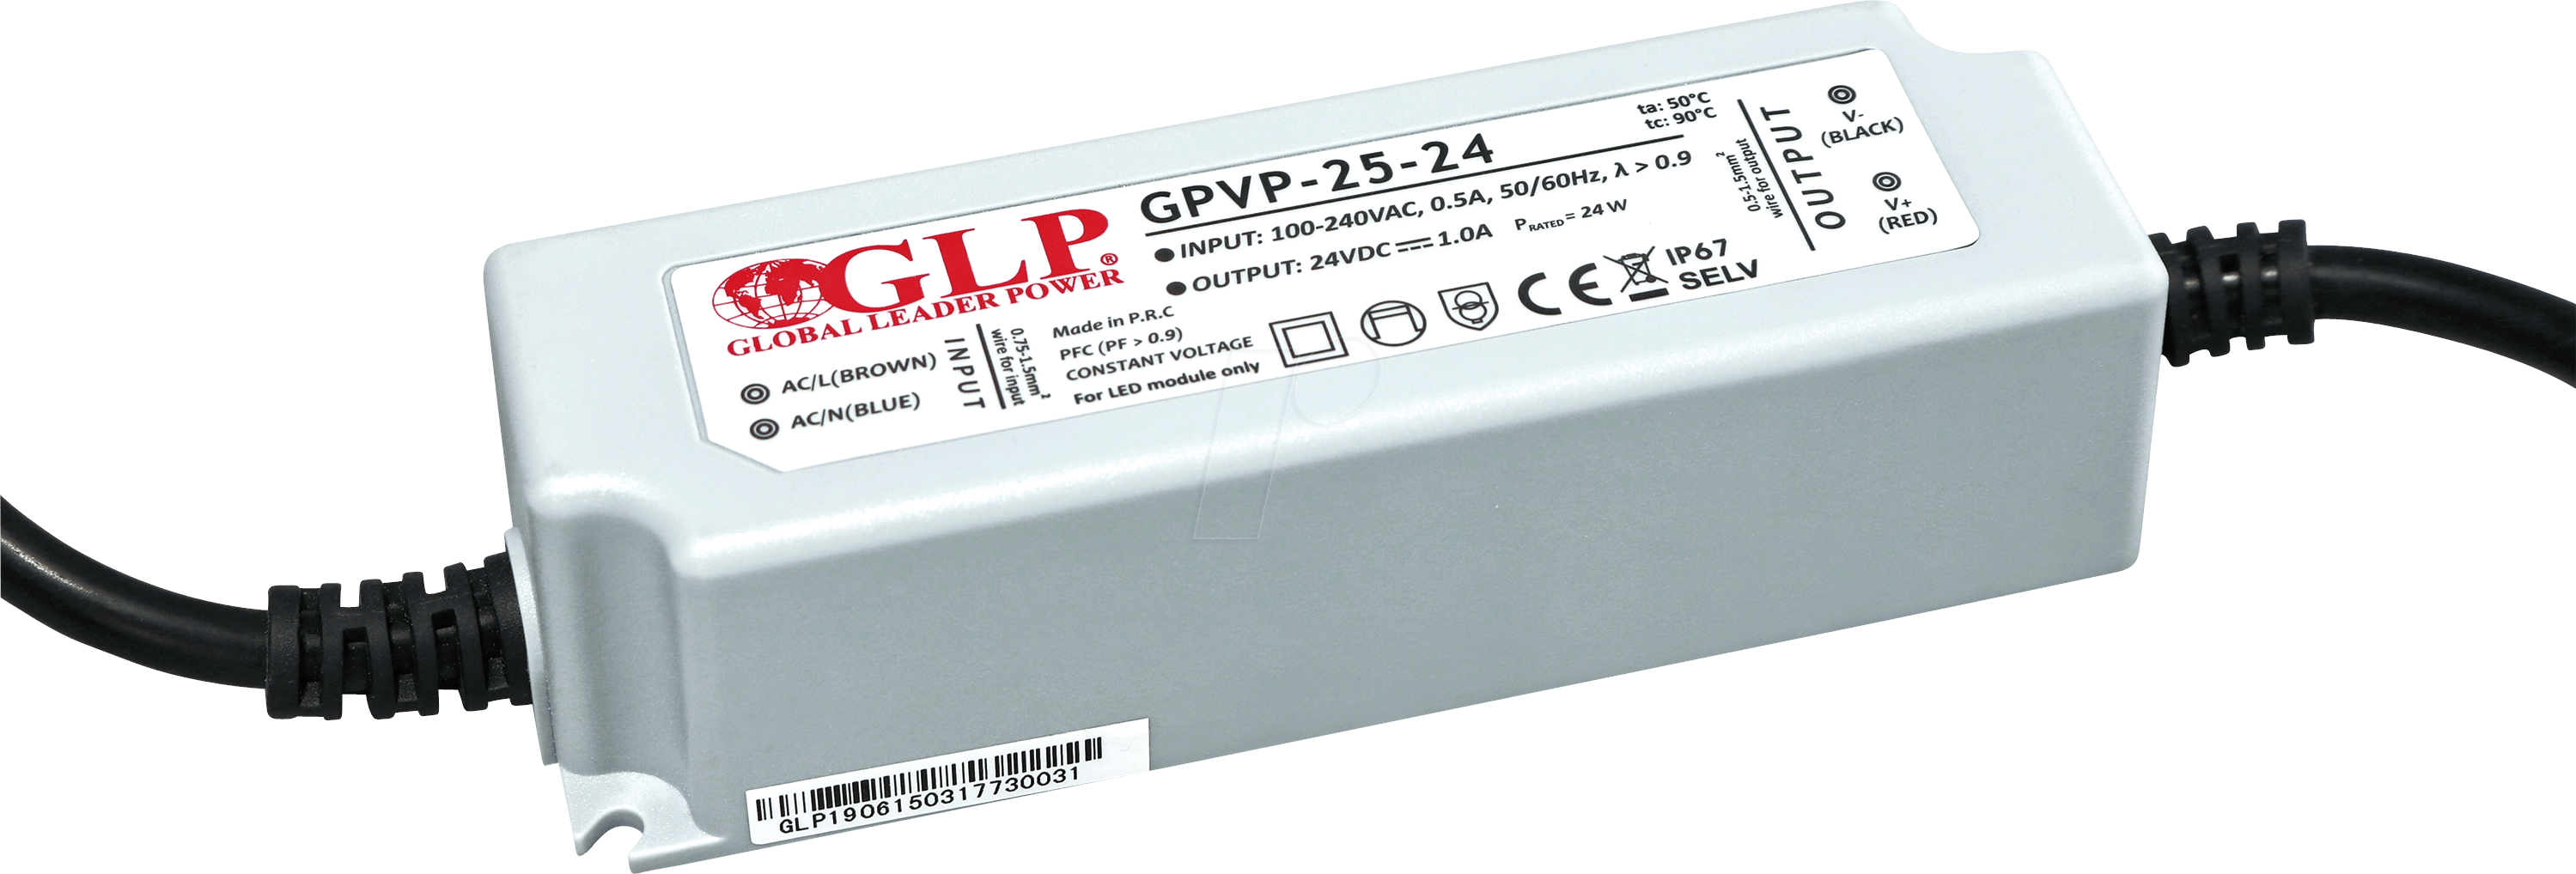 GPVP-25-24 - LED-Netzteil, 25 W, 24 V DC, 1 A, IP67, PFC Funktion